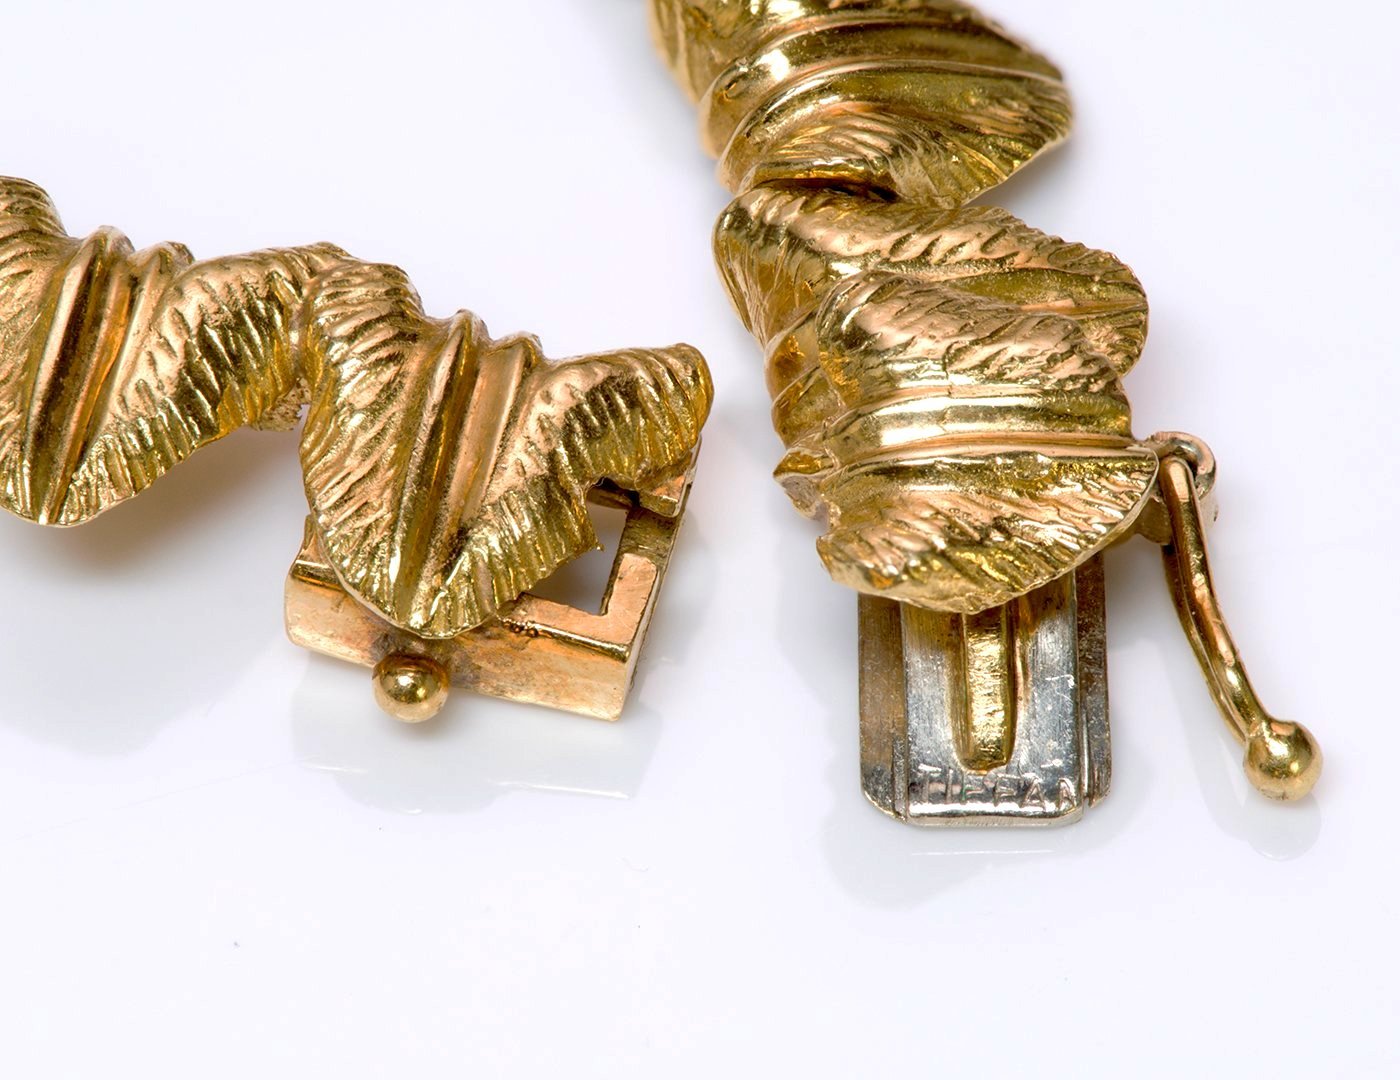 Tiffany & Co. 18K Gold Ruby Diamond Necklace